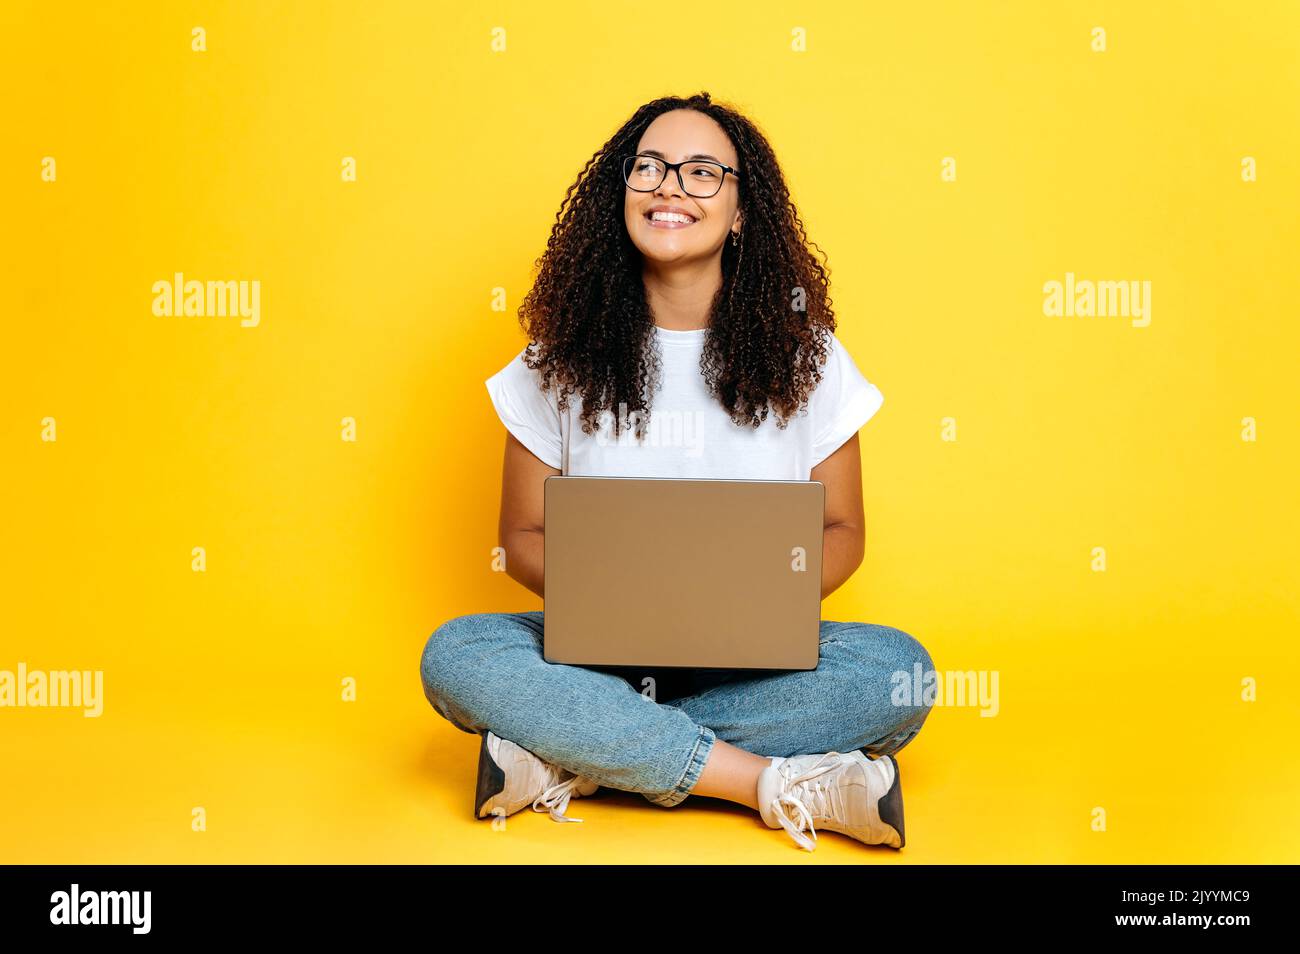 In voller Länge Foto von positiven fröhlich kreative junge brasilianische oder hispanische Frau mit Brille, Freiberufler oder Designer, sitzen auf isolierten orangefarbenen Hintergrund mit Laptop, sieht zur Seite, träumen, lächelt Stockfoto